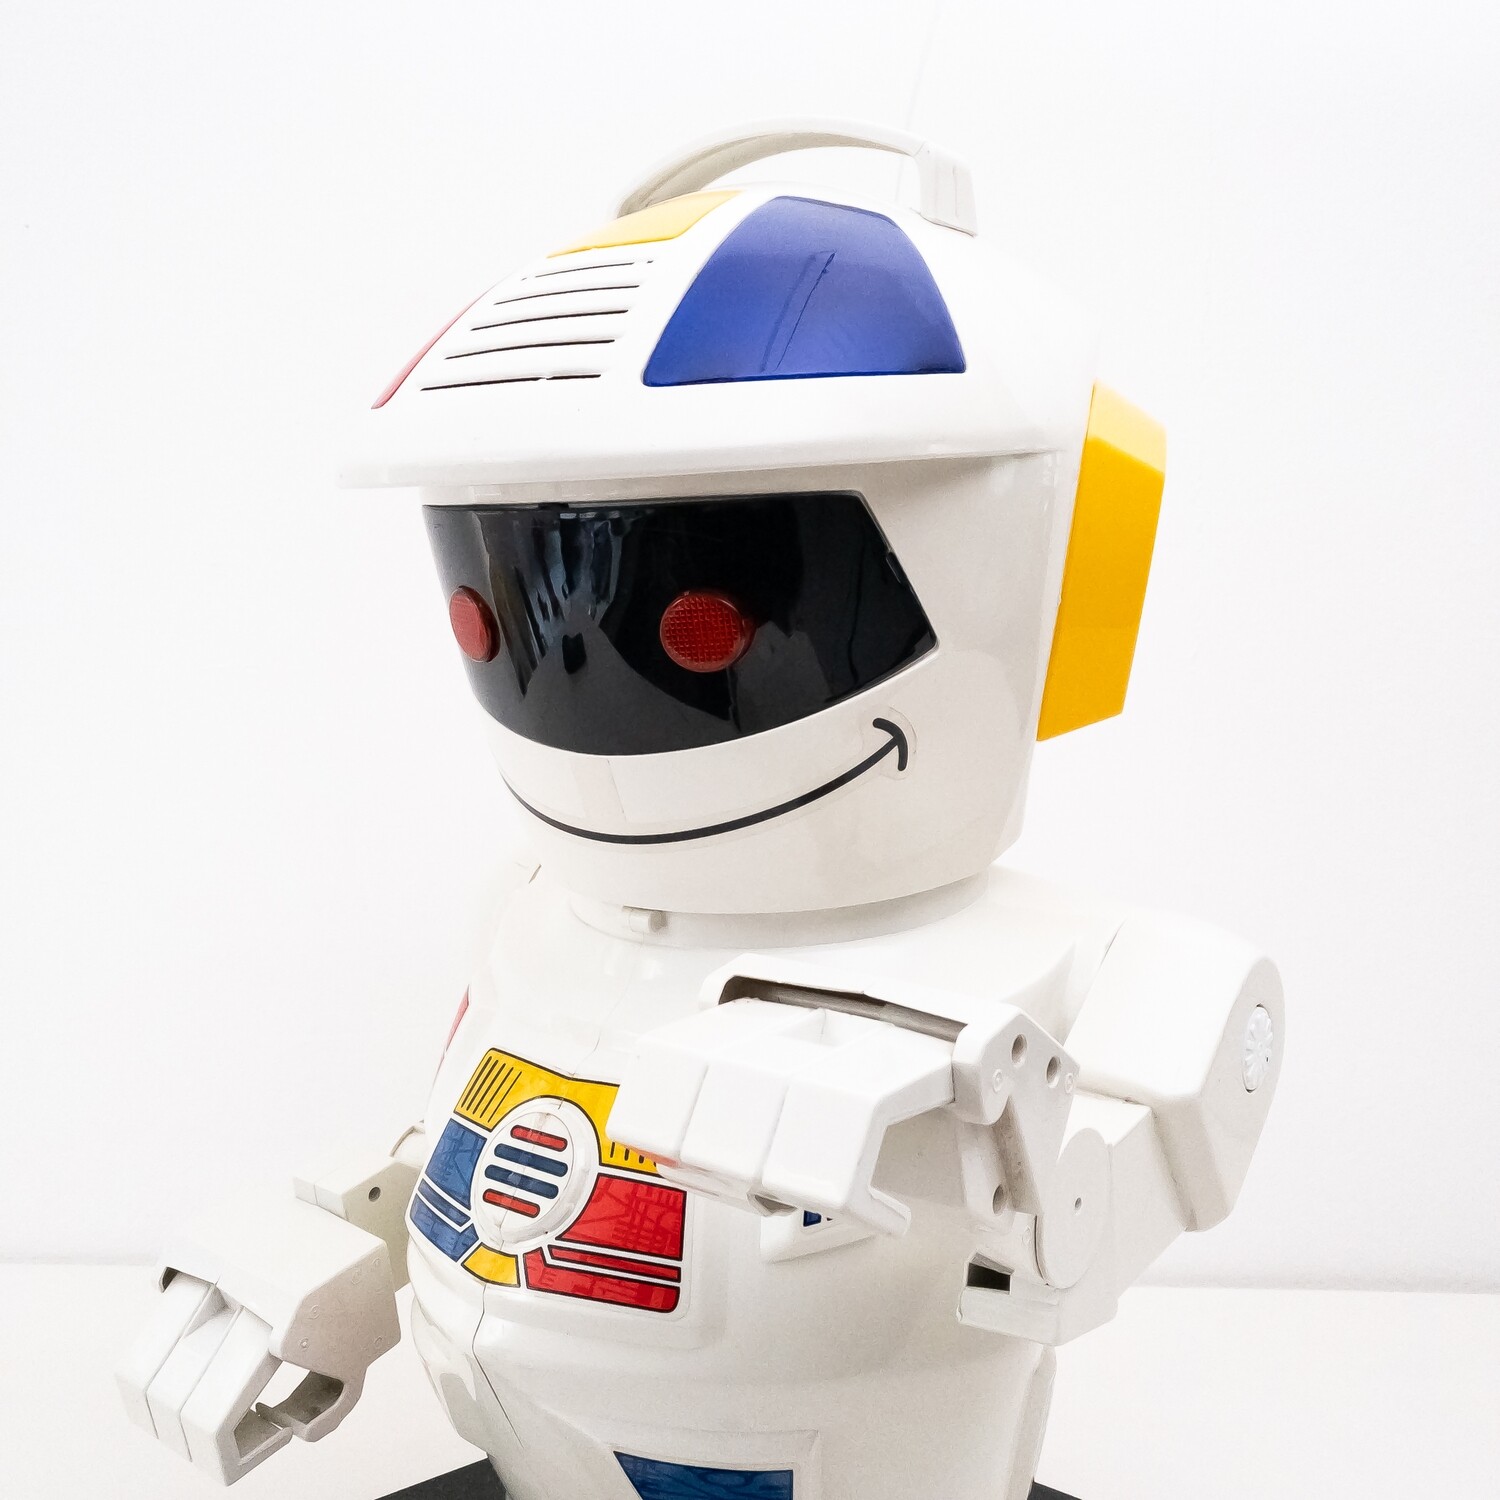 Emiglio Robot di Giochi Preziosi, Italia anni '90